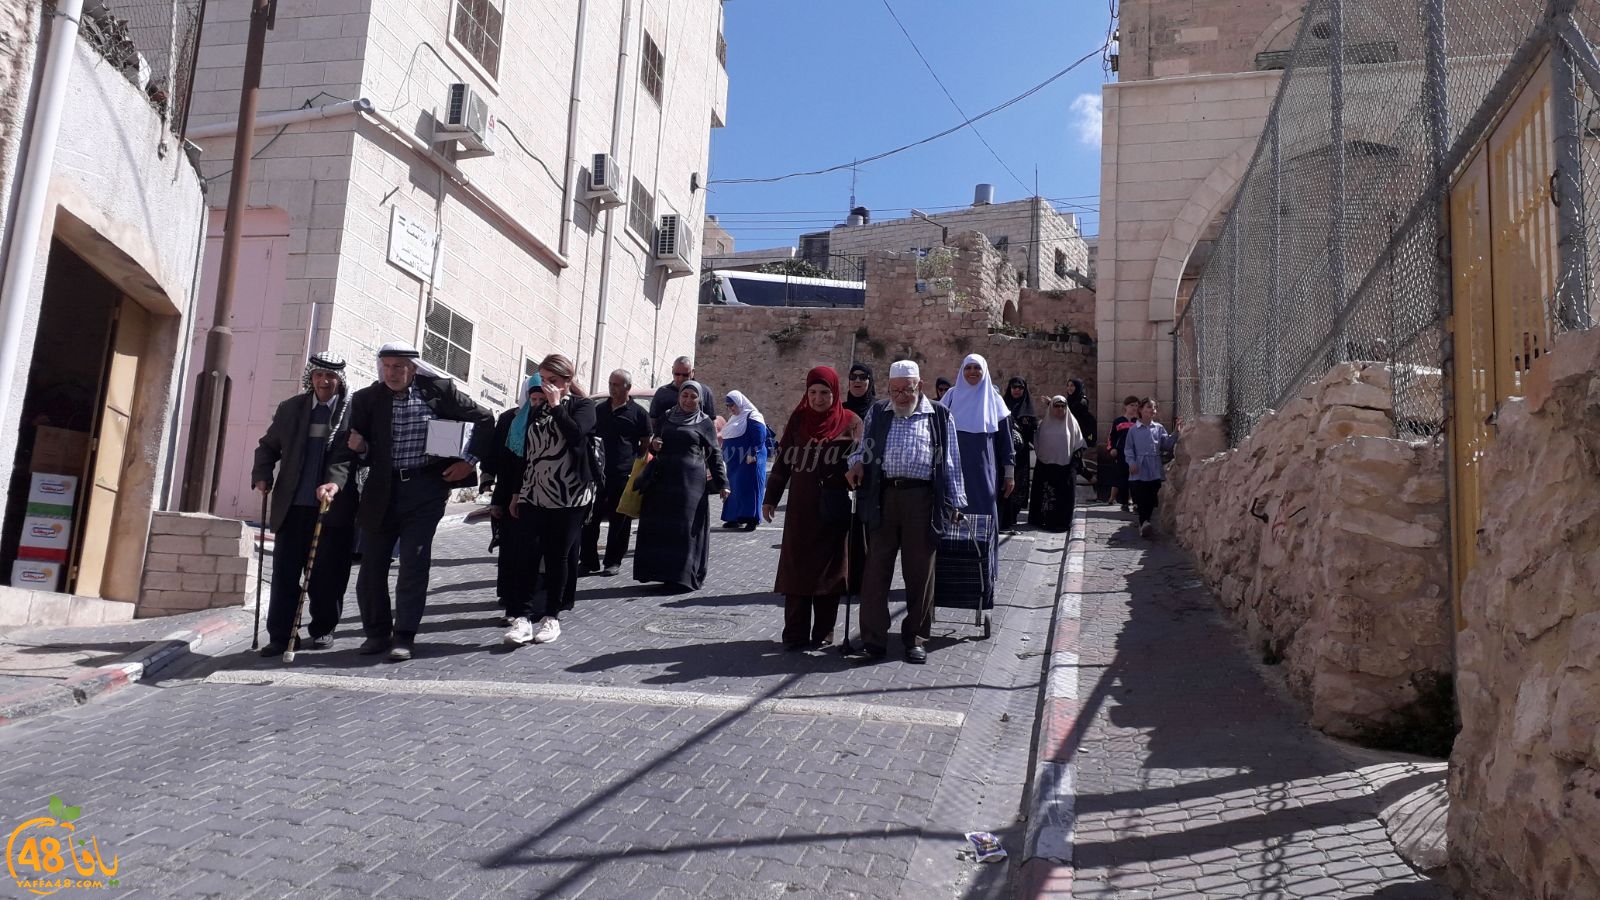 بالصور: احباب الأقصى من يافا تُنظم رحلة ترفيهية الى مدينة الخليل